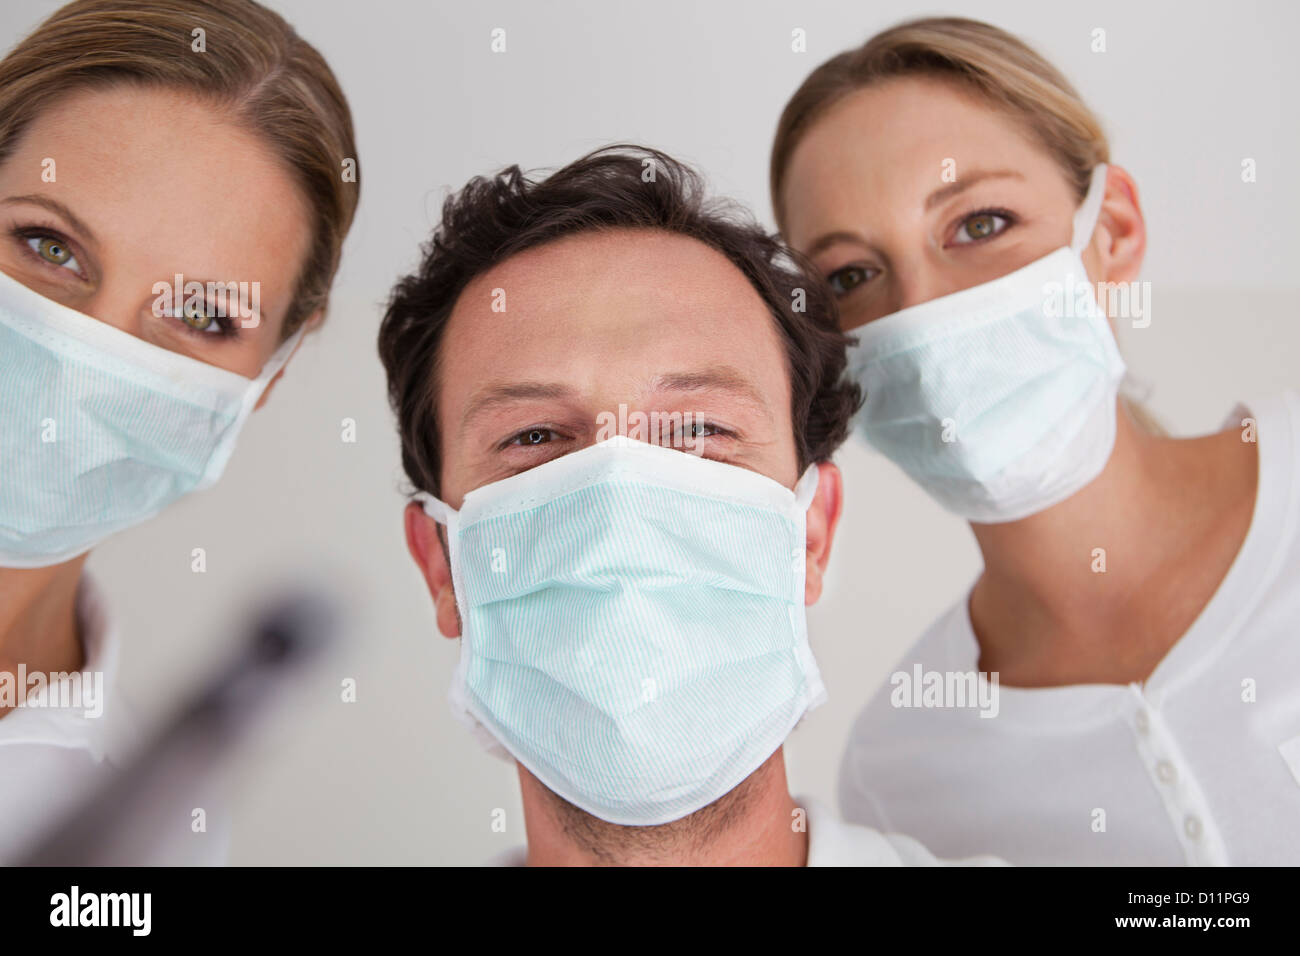 Germania, dentista con mascherina chirurgica, ritratto Foto Stock